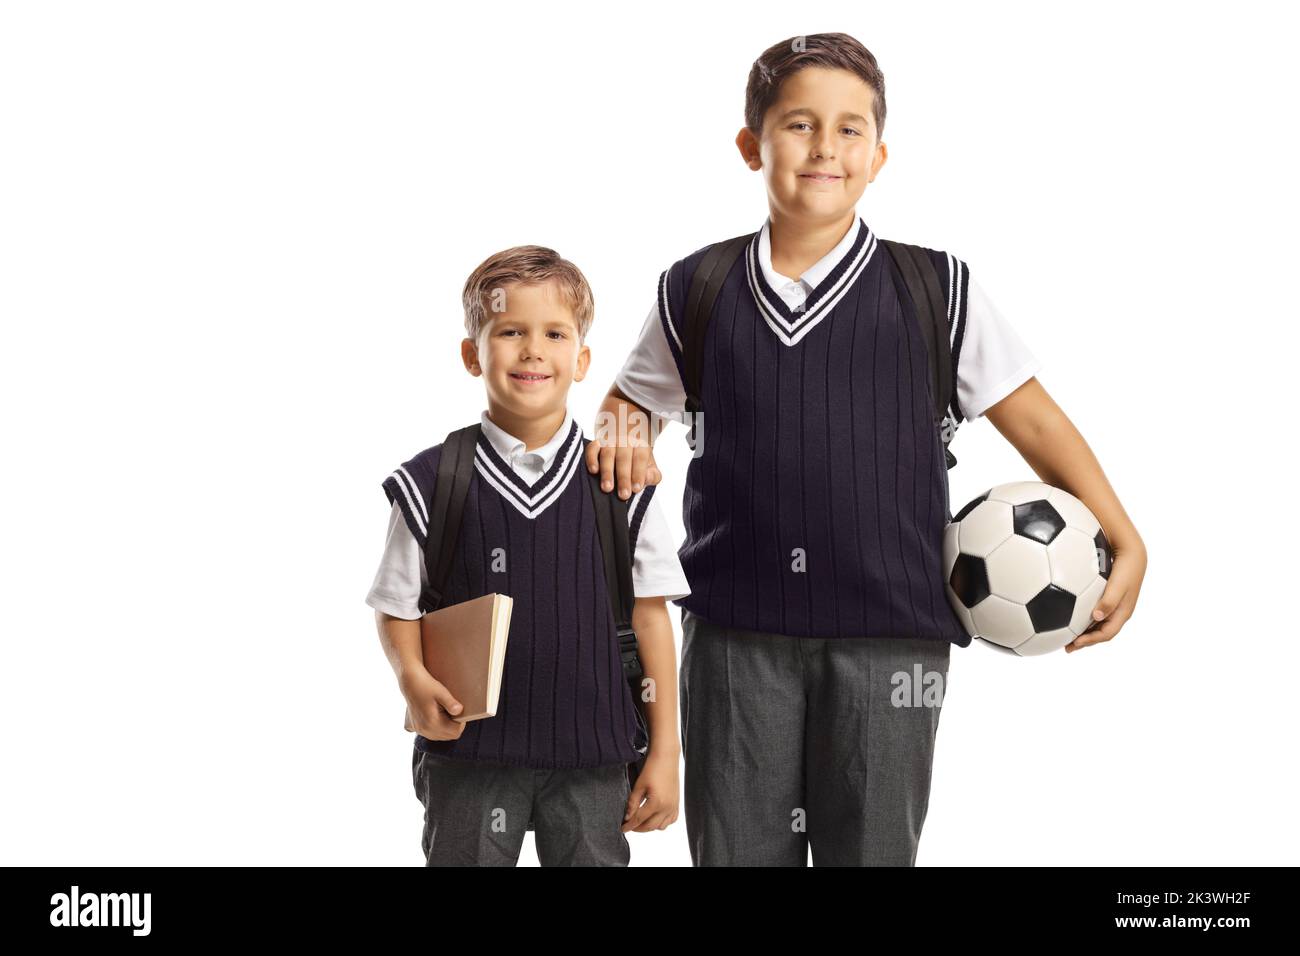 Fratelli che indossano uniformi scolastiche e che tengono un calcio isolato su sfondo bianco Foto Stock